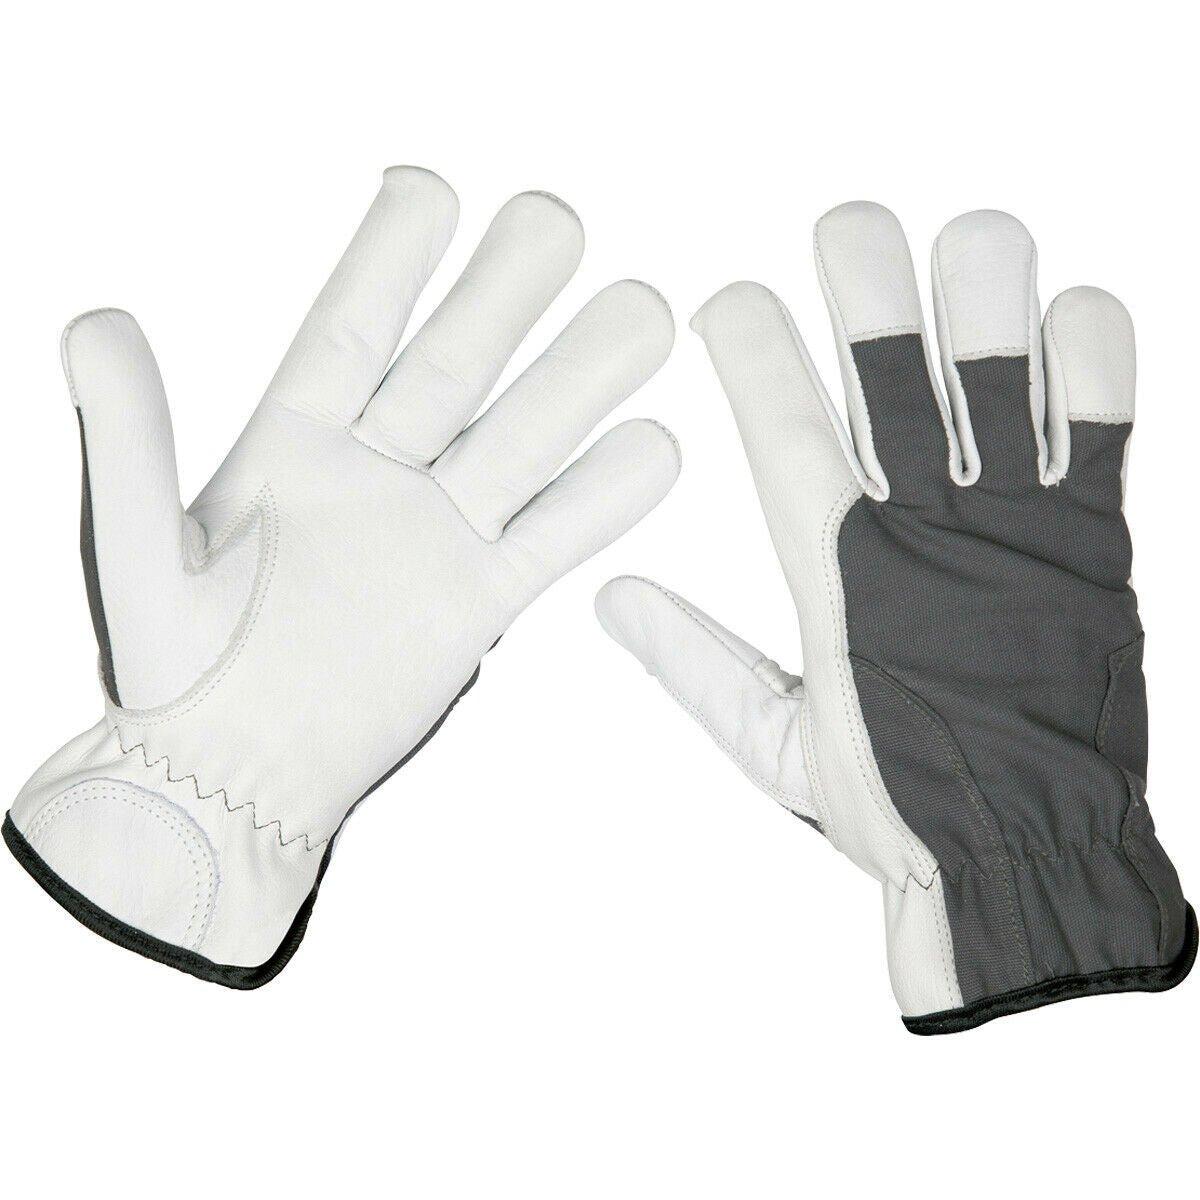 ПАРА ПРЕМИУМ прохладных кожаных перчаток - Большие - Цельнозерновая яловая кожа - Дышащие Loops, мультиколор